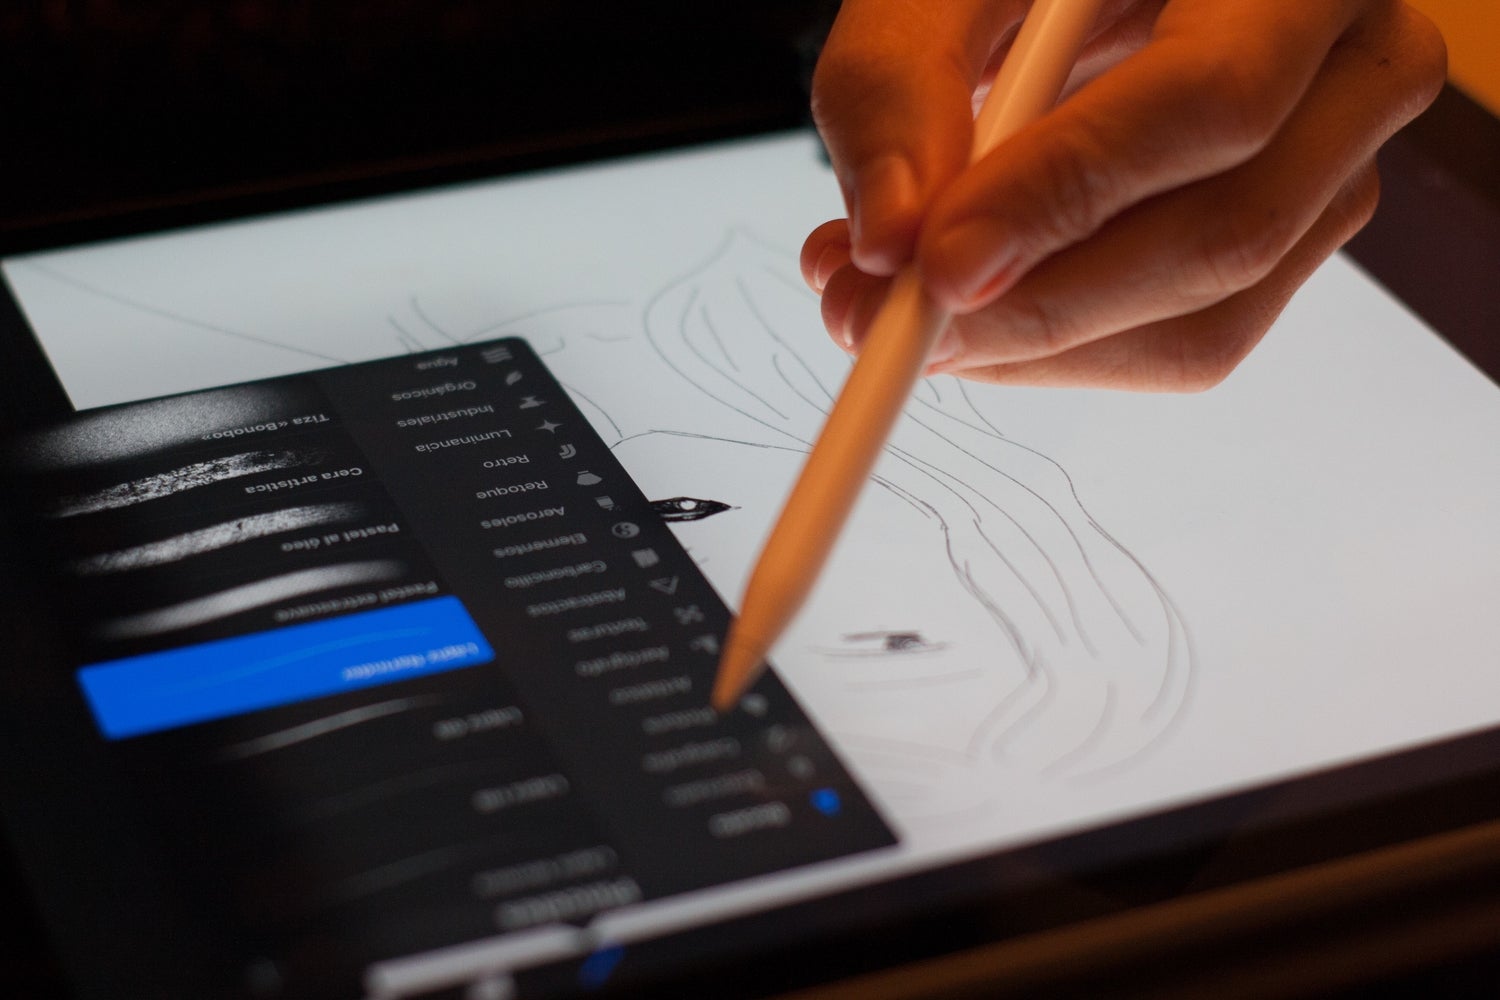 Tangan menggunakan iPad dengan stylus saat menggambar dan menggunakan Adobe Photoshop.